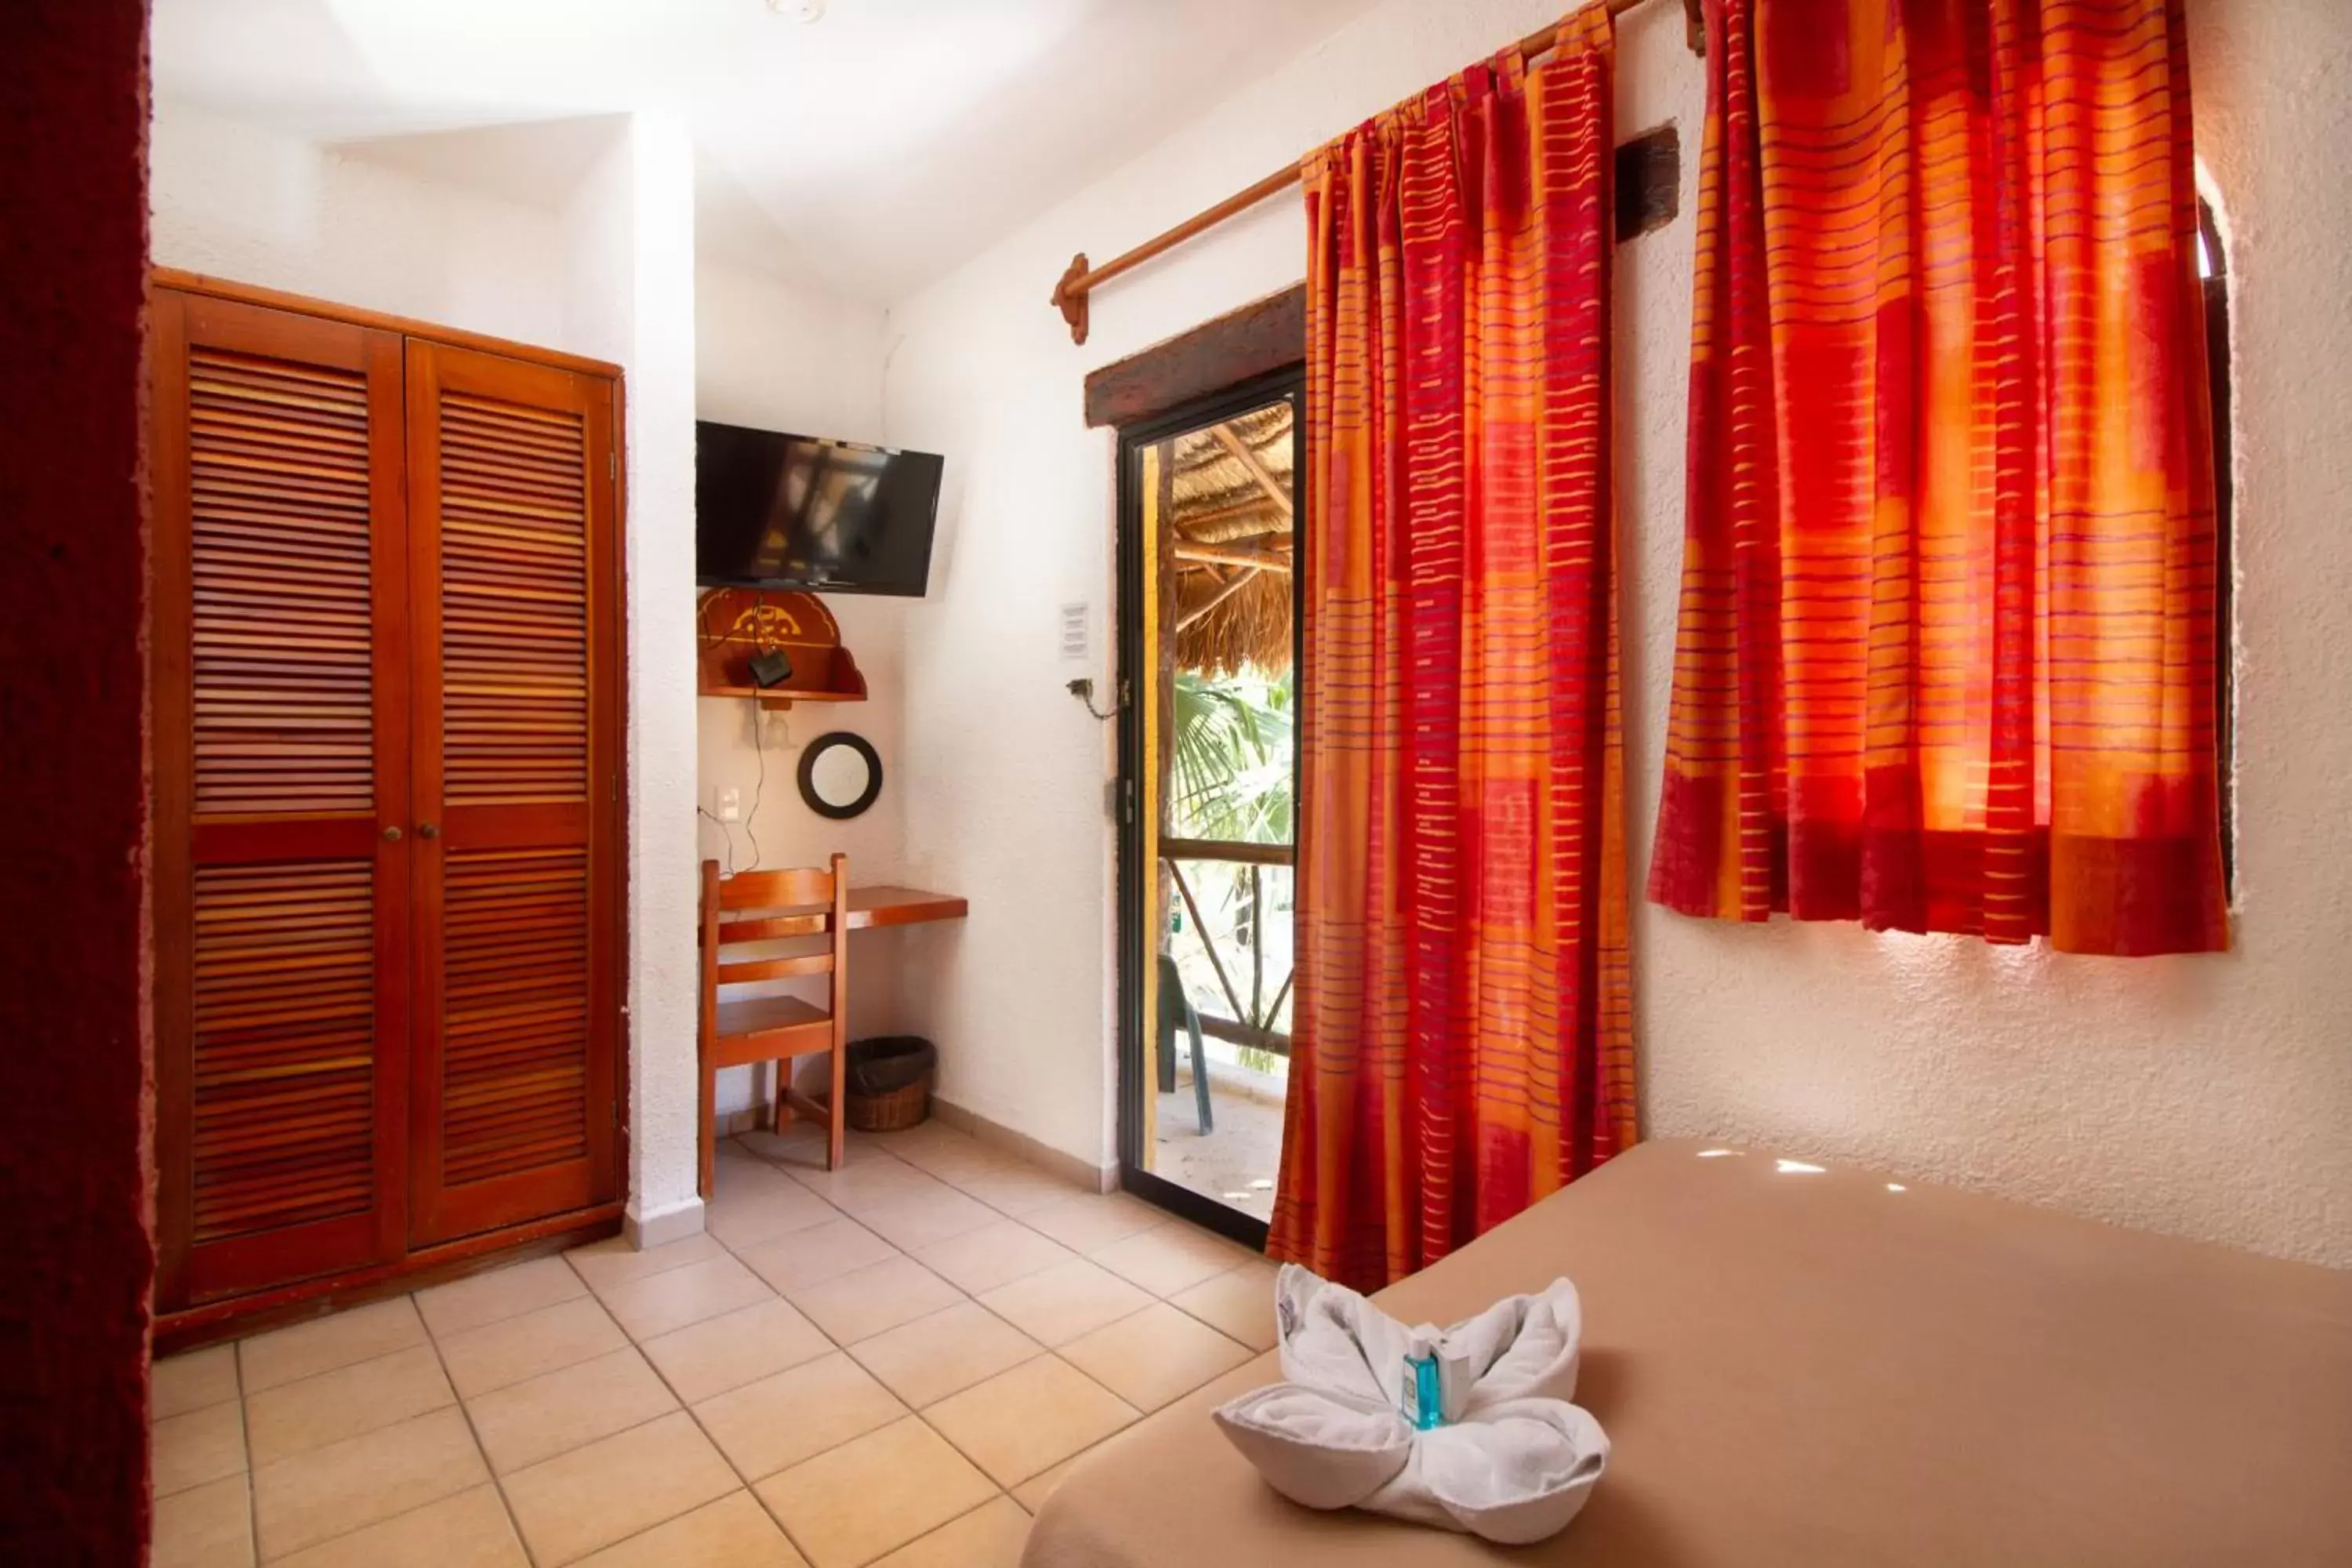 Bedroom in Hotel Bosque Caribe, 5th Av. zone